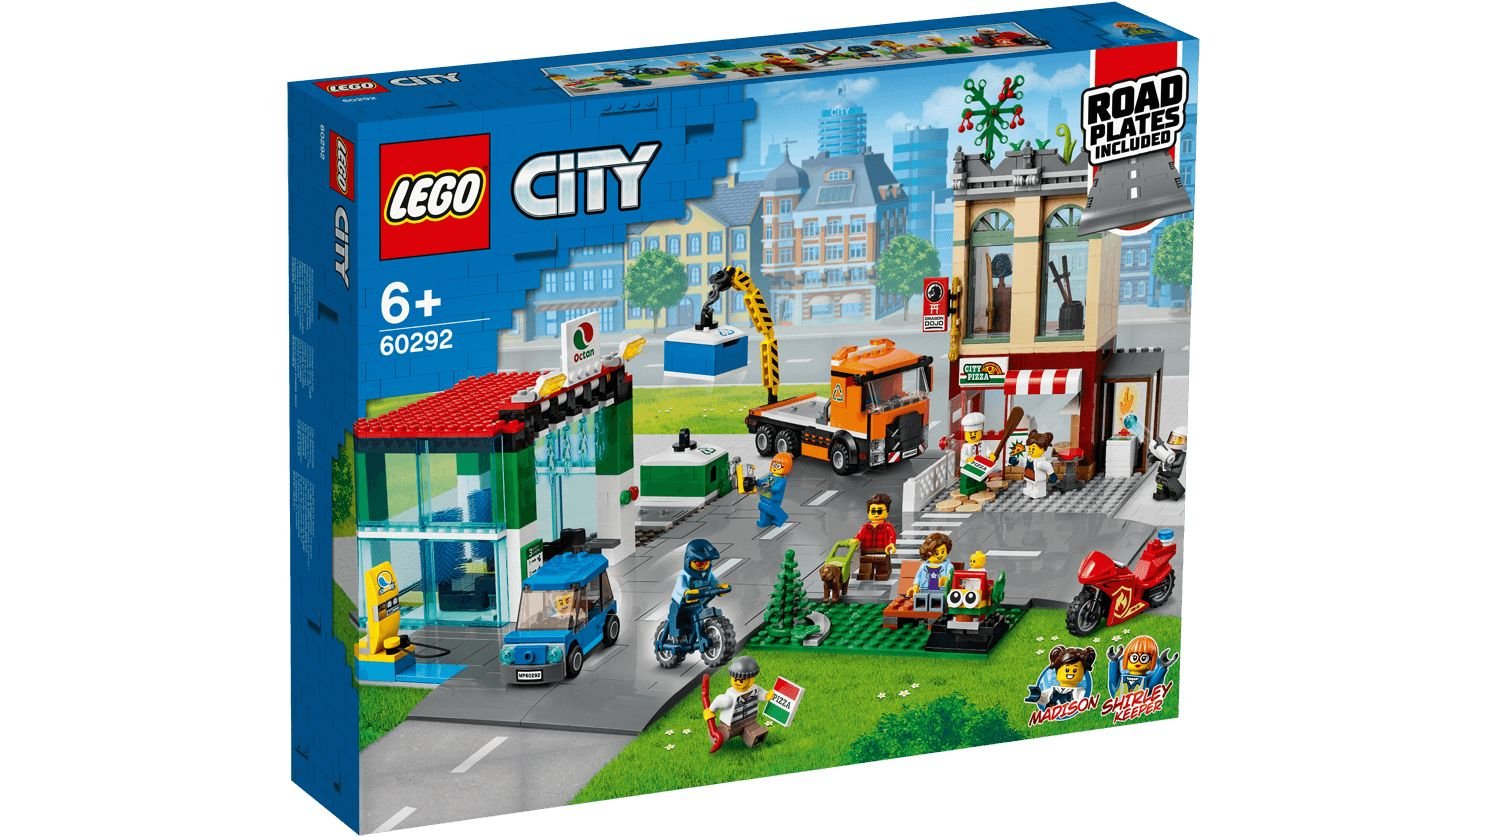 LEGO City 60292 Stadtzentrum LEGO_60292_Box1_v29_1488.jpg